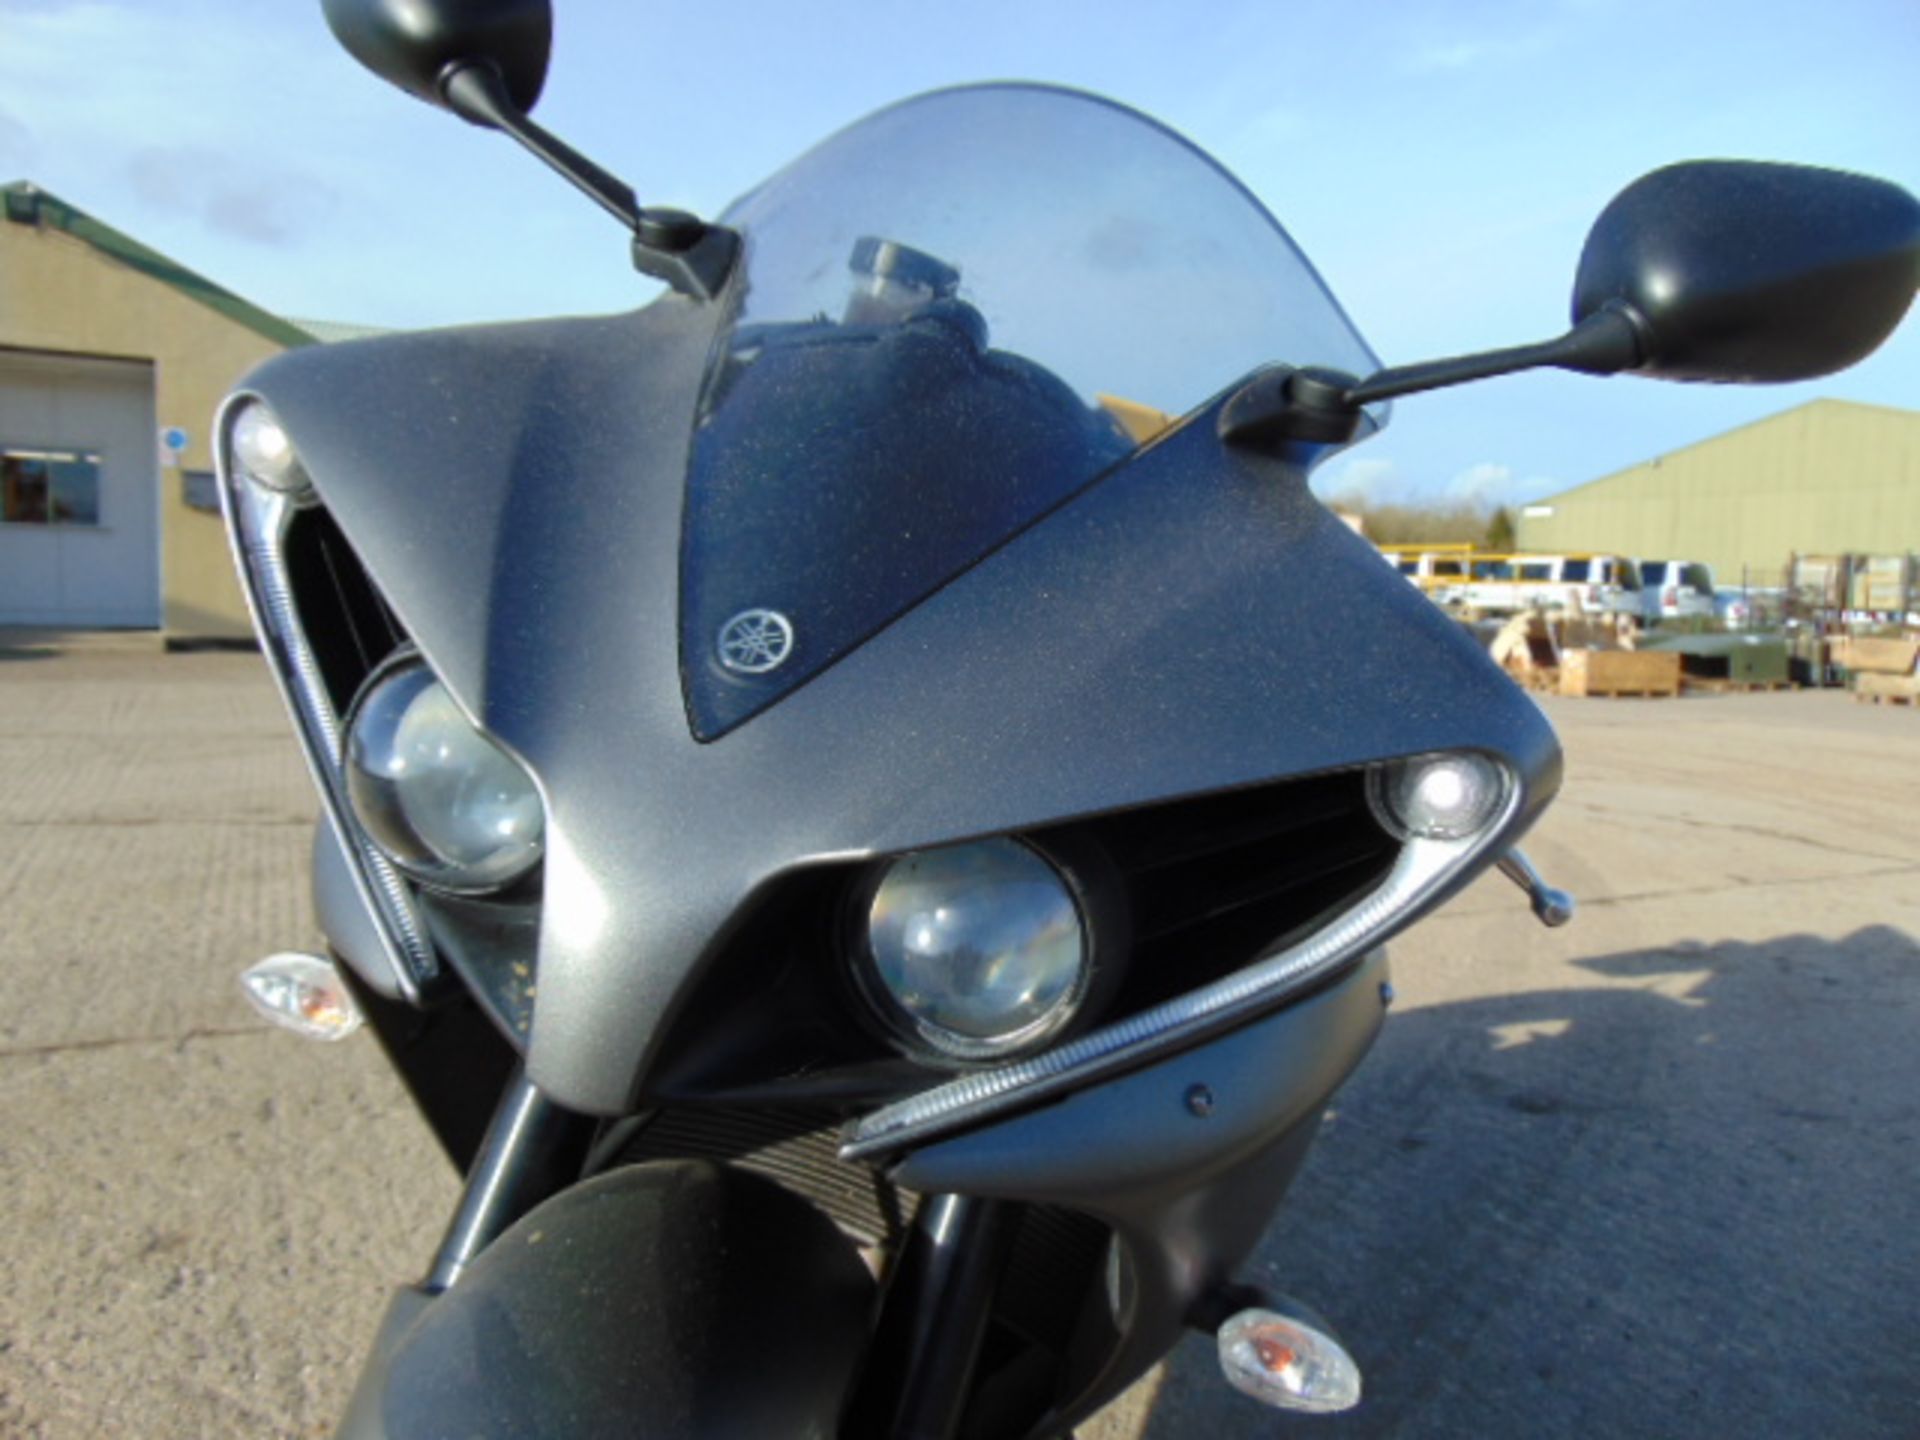 2013 Yamaha YZF-R1 Superbike - Image 17 of 27